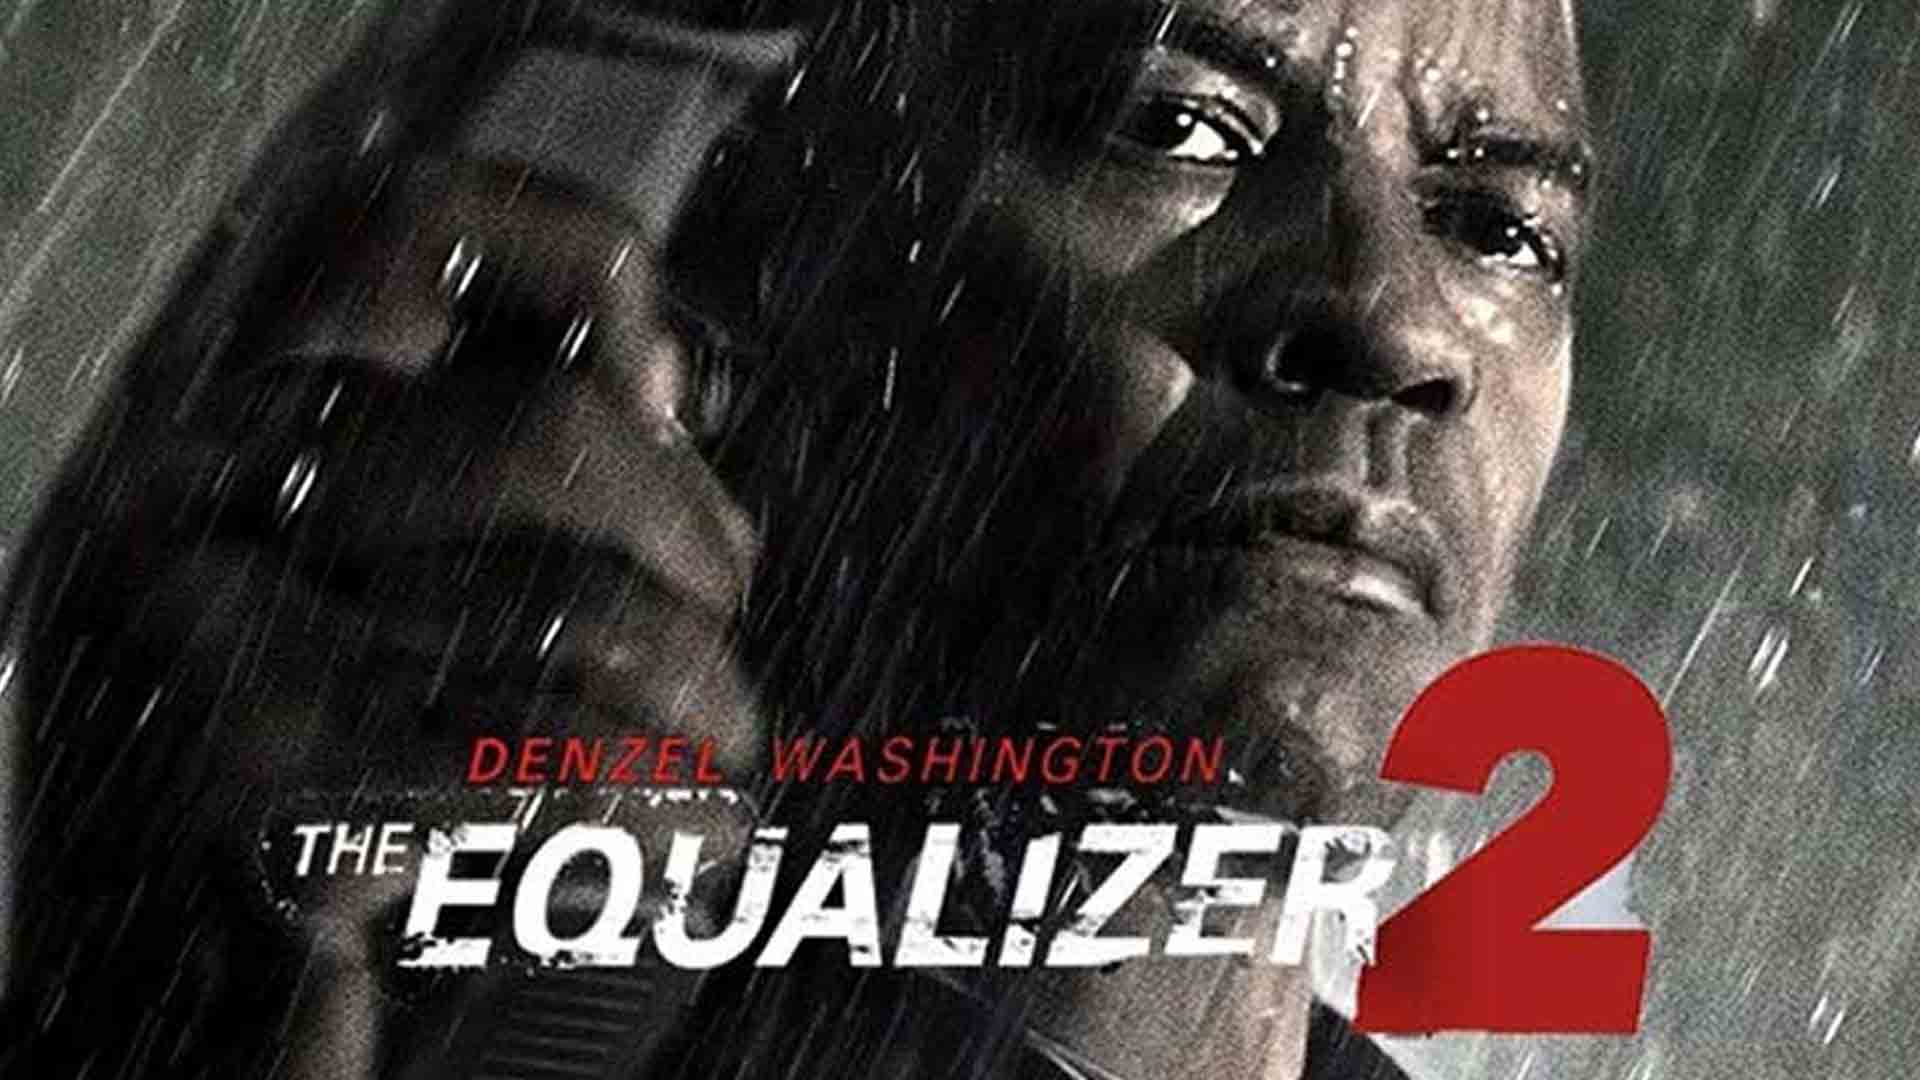 فیلم اکشن جنگی ۲ The Equalizer - برابر کننده ۲ 